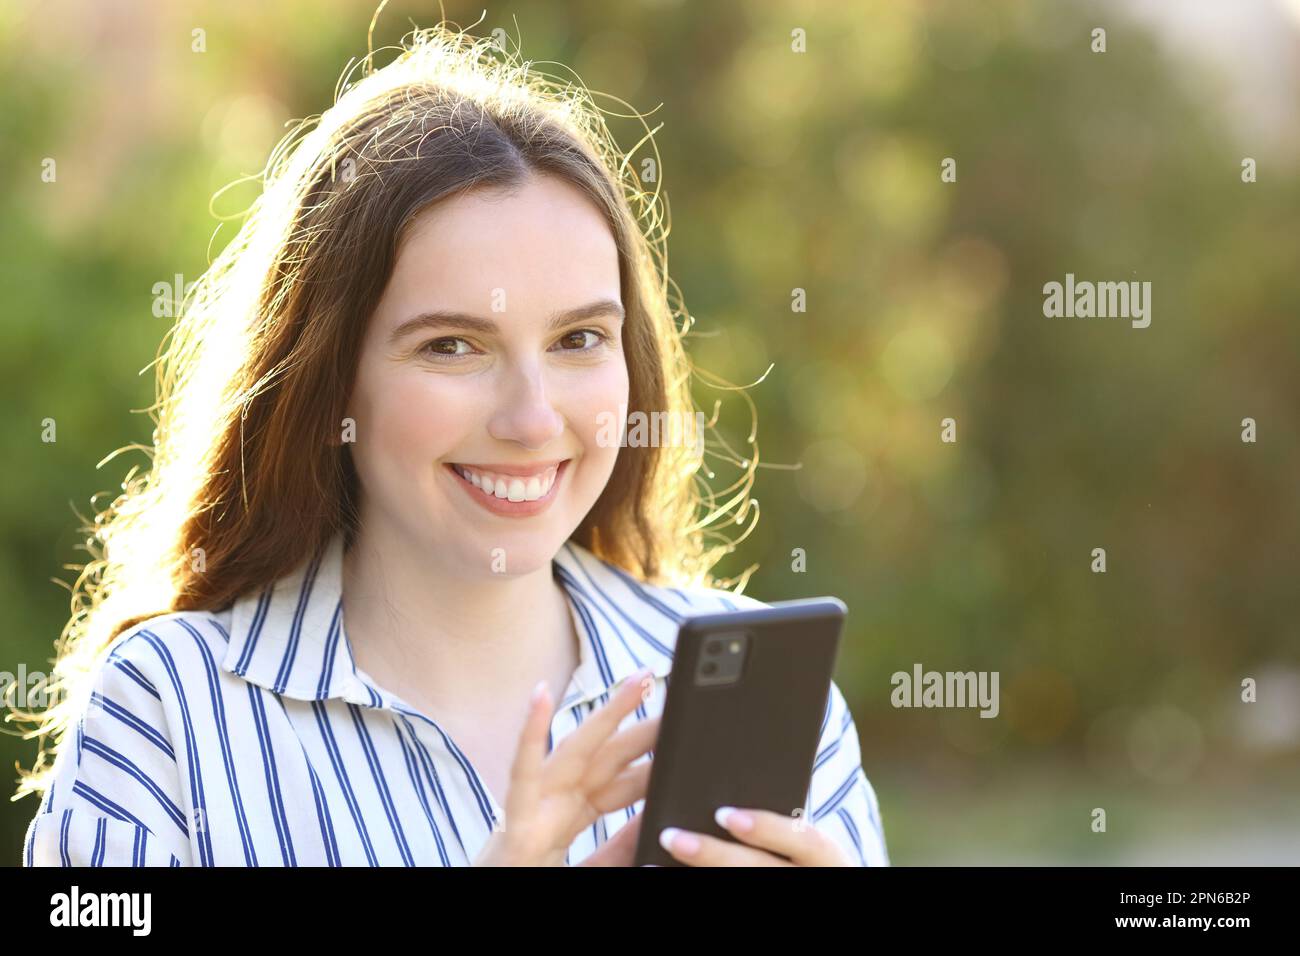 Glückliche Frau mit Handy sieht in die Kamera, wenn sie in einem Park steht Stockfoto